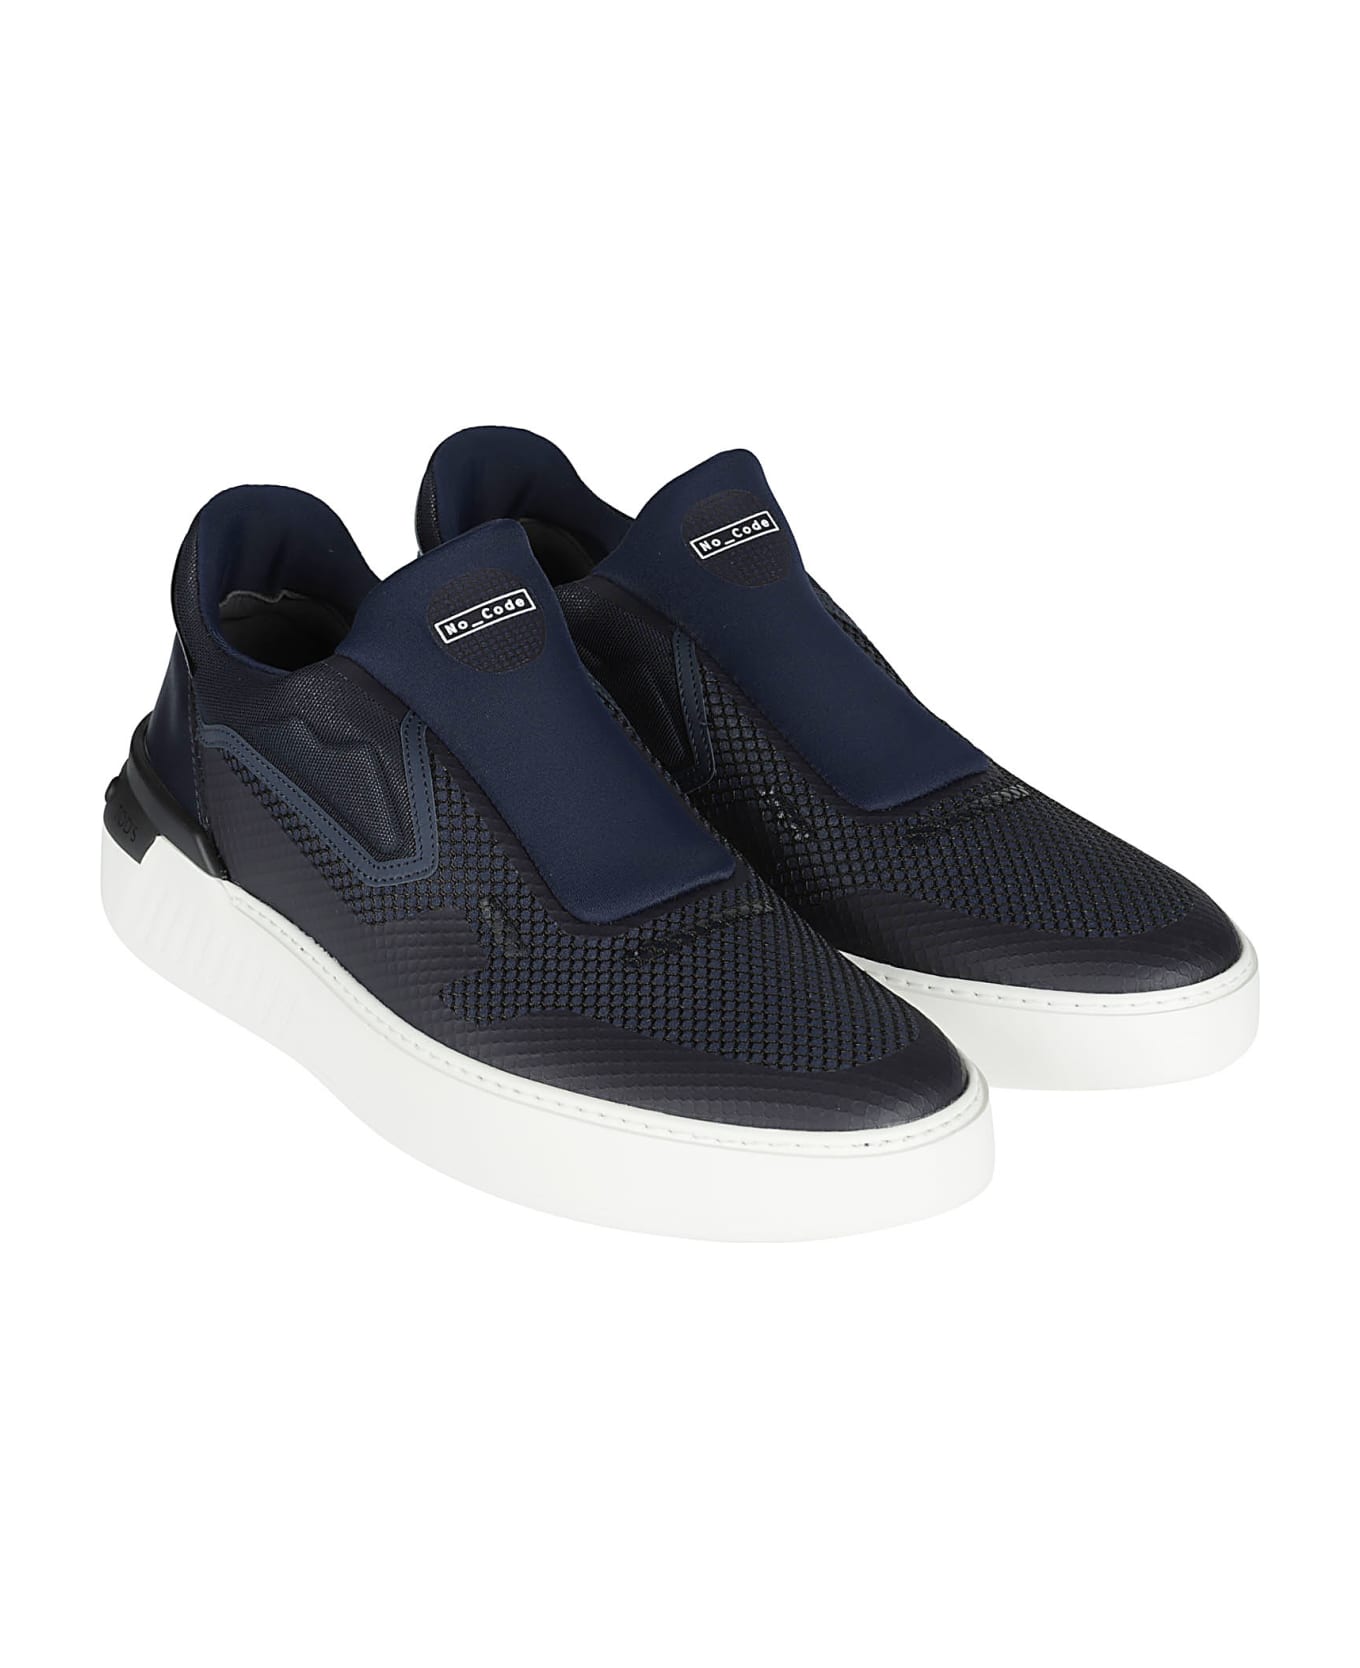 Tod's 14c Sneakers - Blu/blu Odissea スニーカー